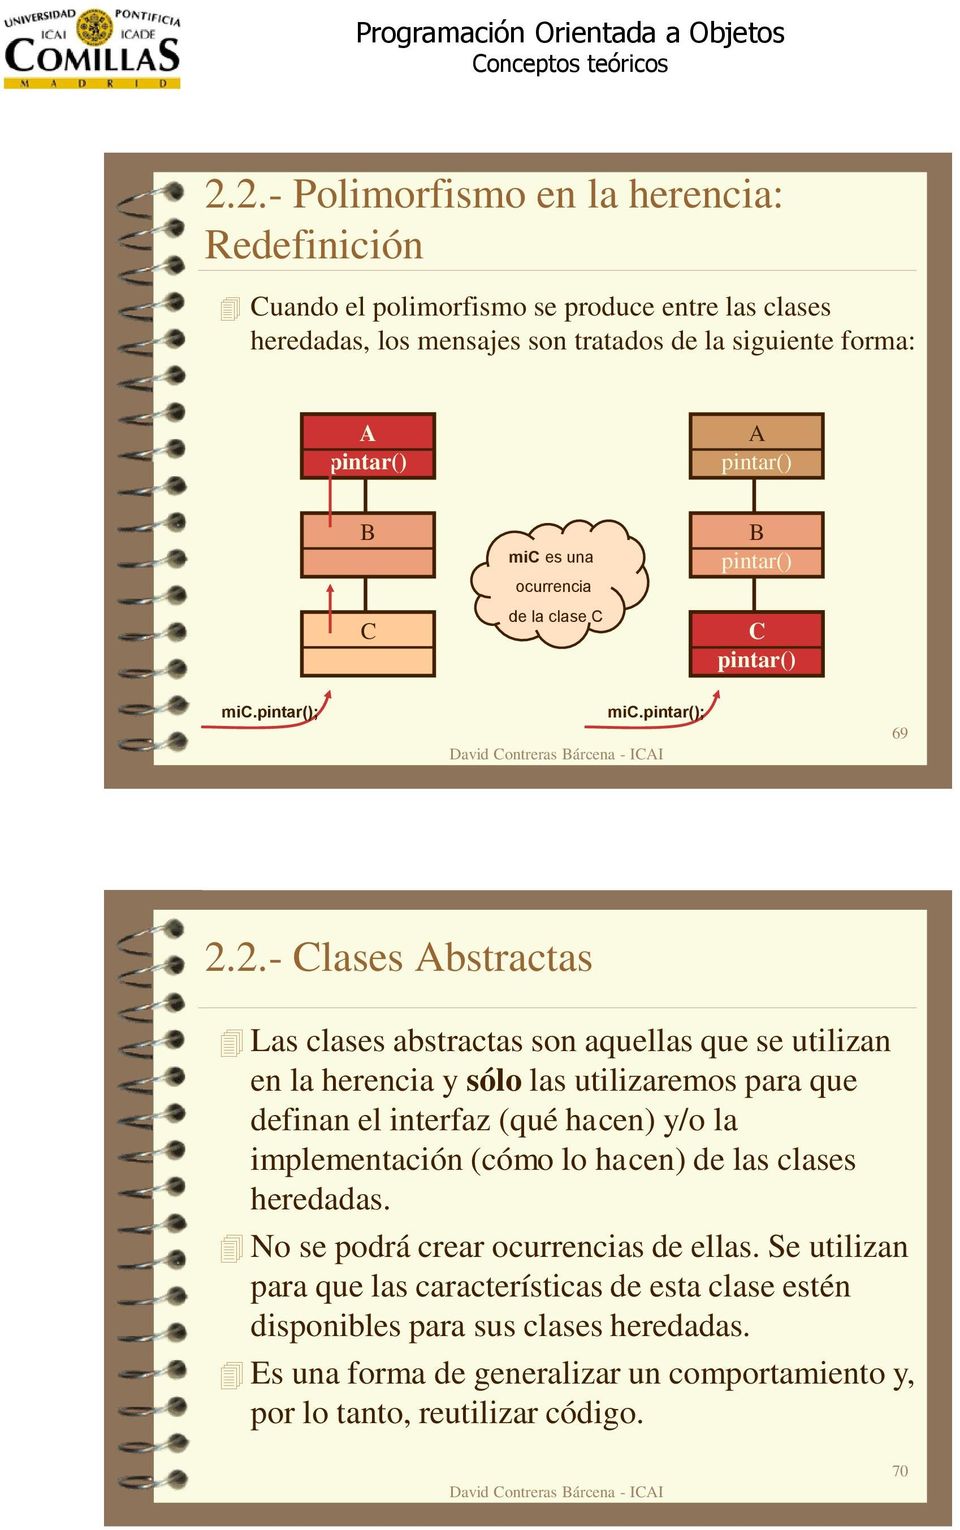 2.- Clases Abstractas Las clases abstractas son aquellas que se utilizan en la herencia y sólo las utilizaremos para que definan el interfaz (qué hacen) y/o la implementación